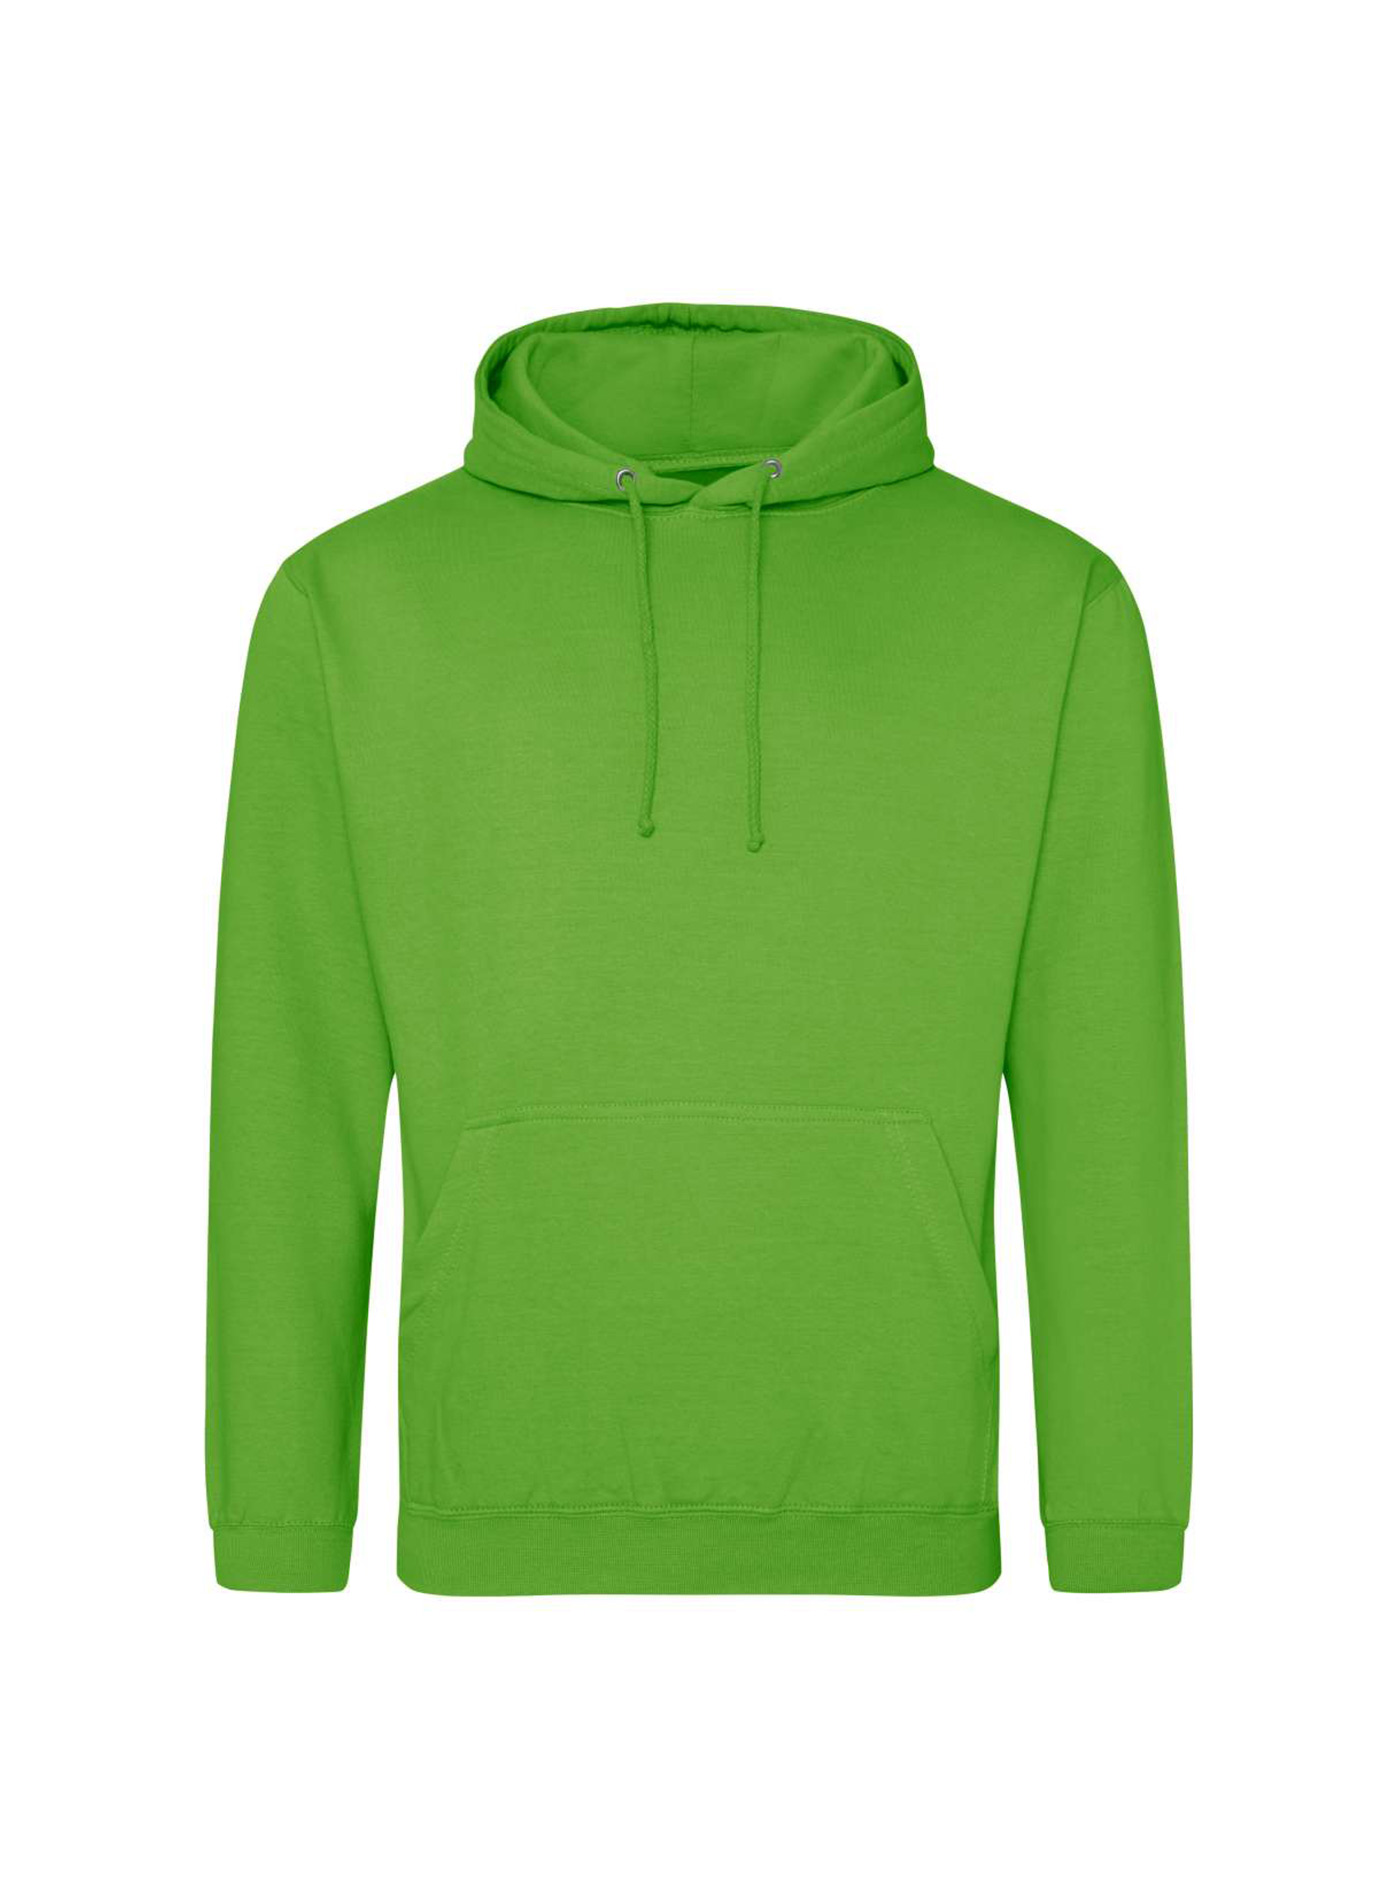 Mikina s kapucí unisex Just Hoods - Limetkově zelená L